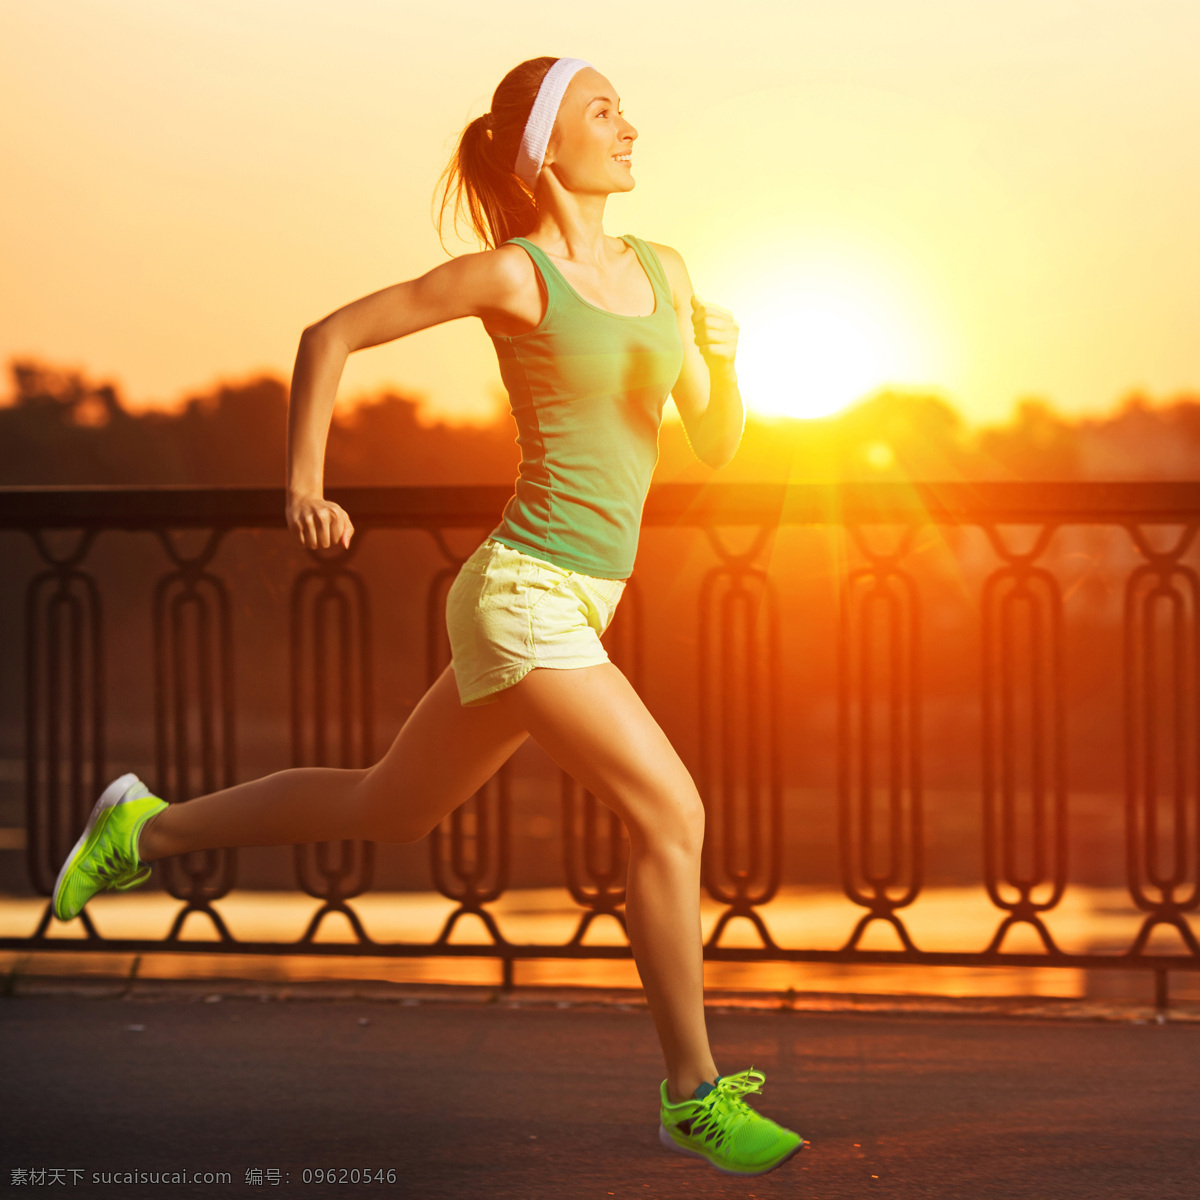 阳光 下 跑步 健身 美女 体育运动 外国美女 生活百科 黄色